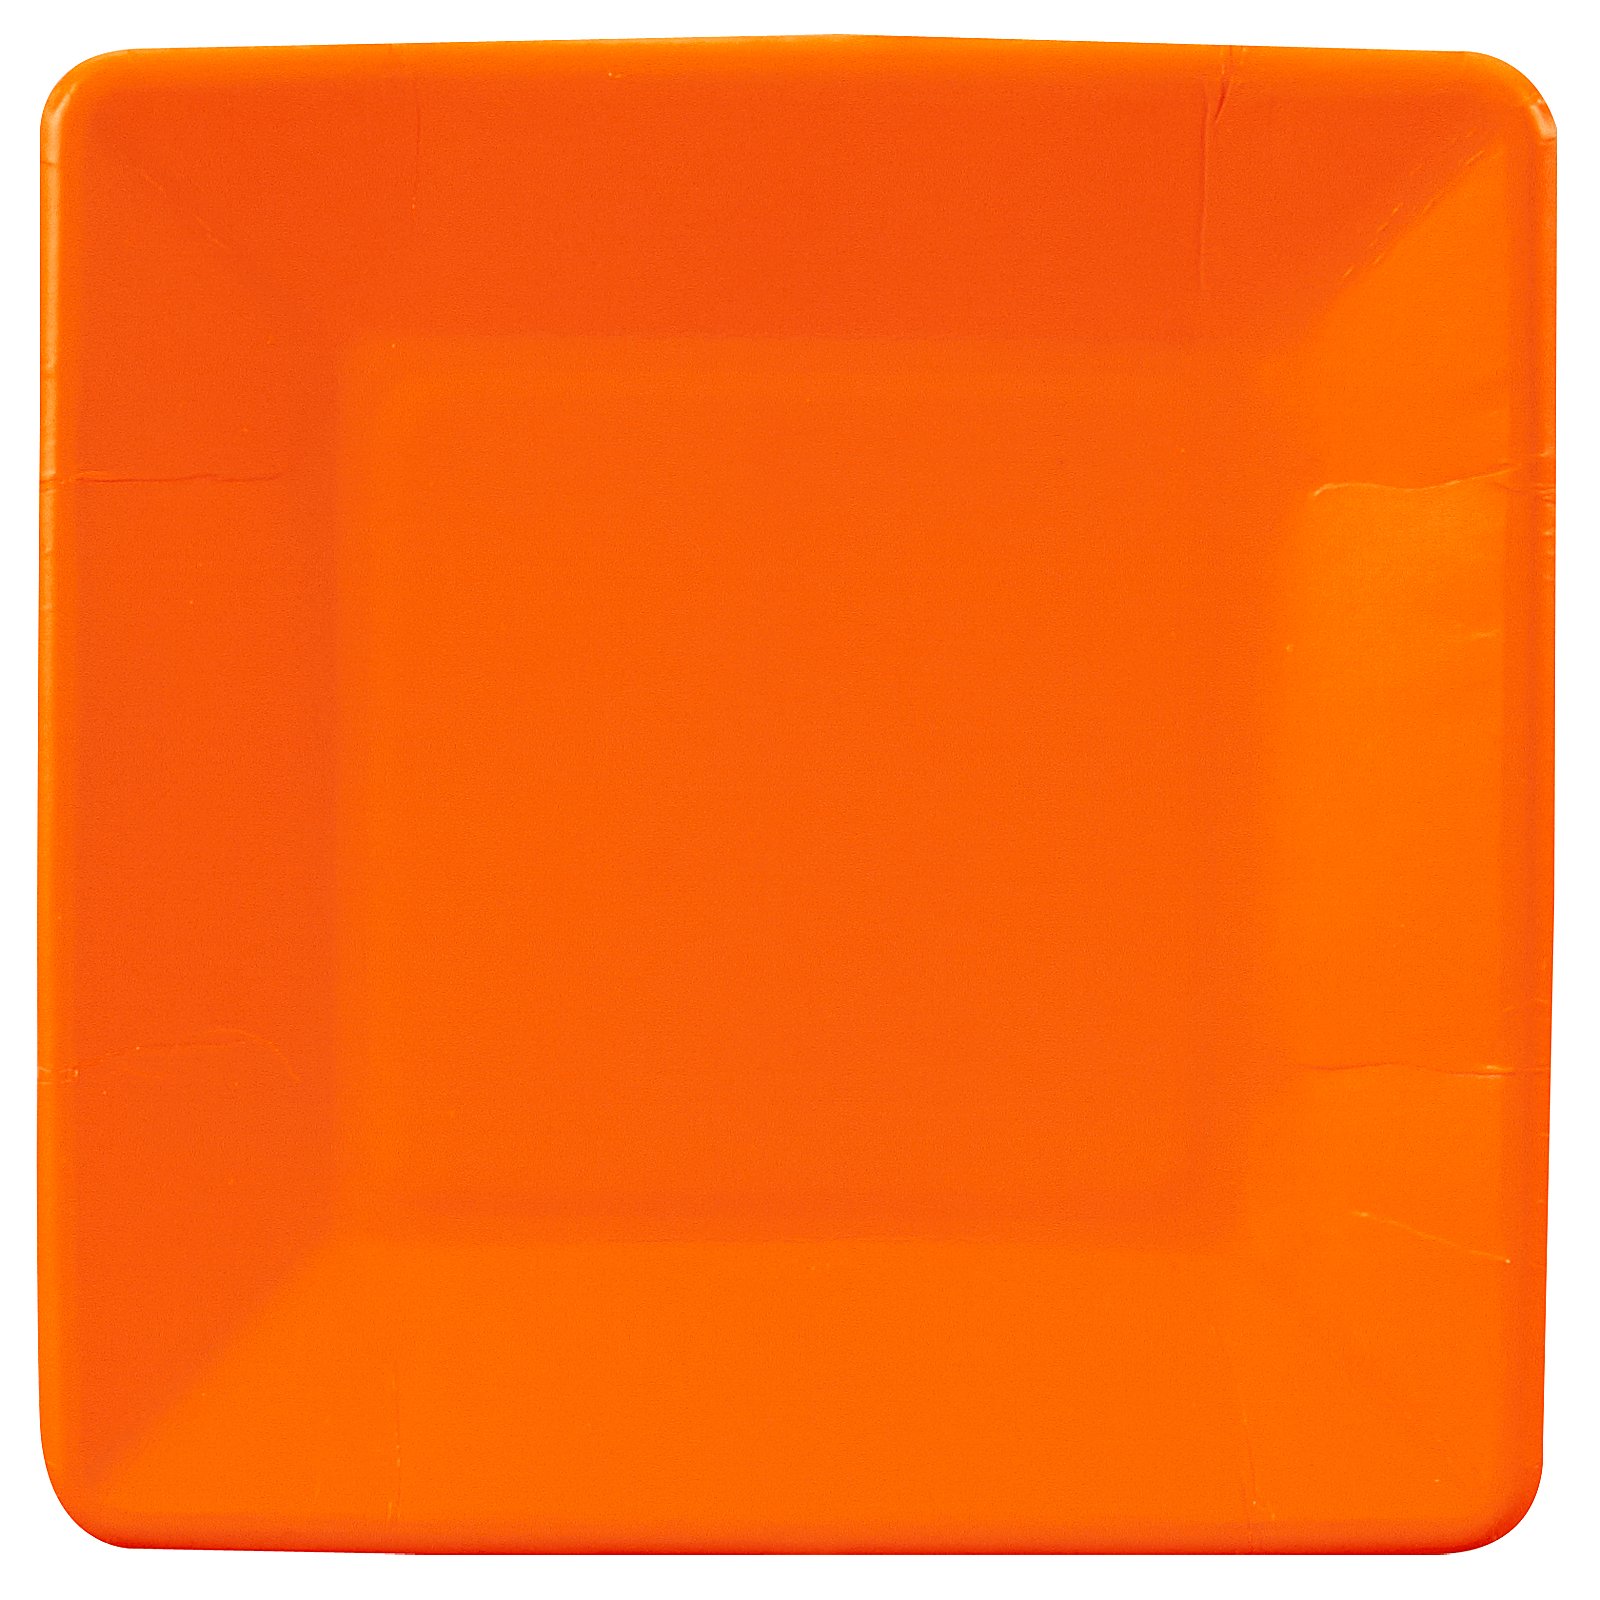 Sunkissed Orange (Orange) Square Dessert Plates (18 count) .